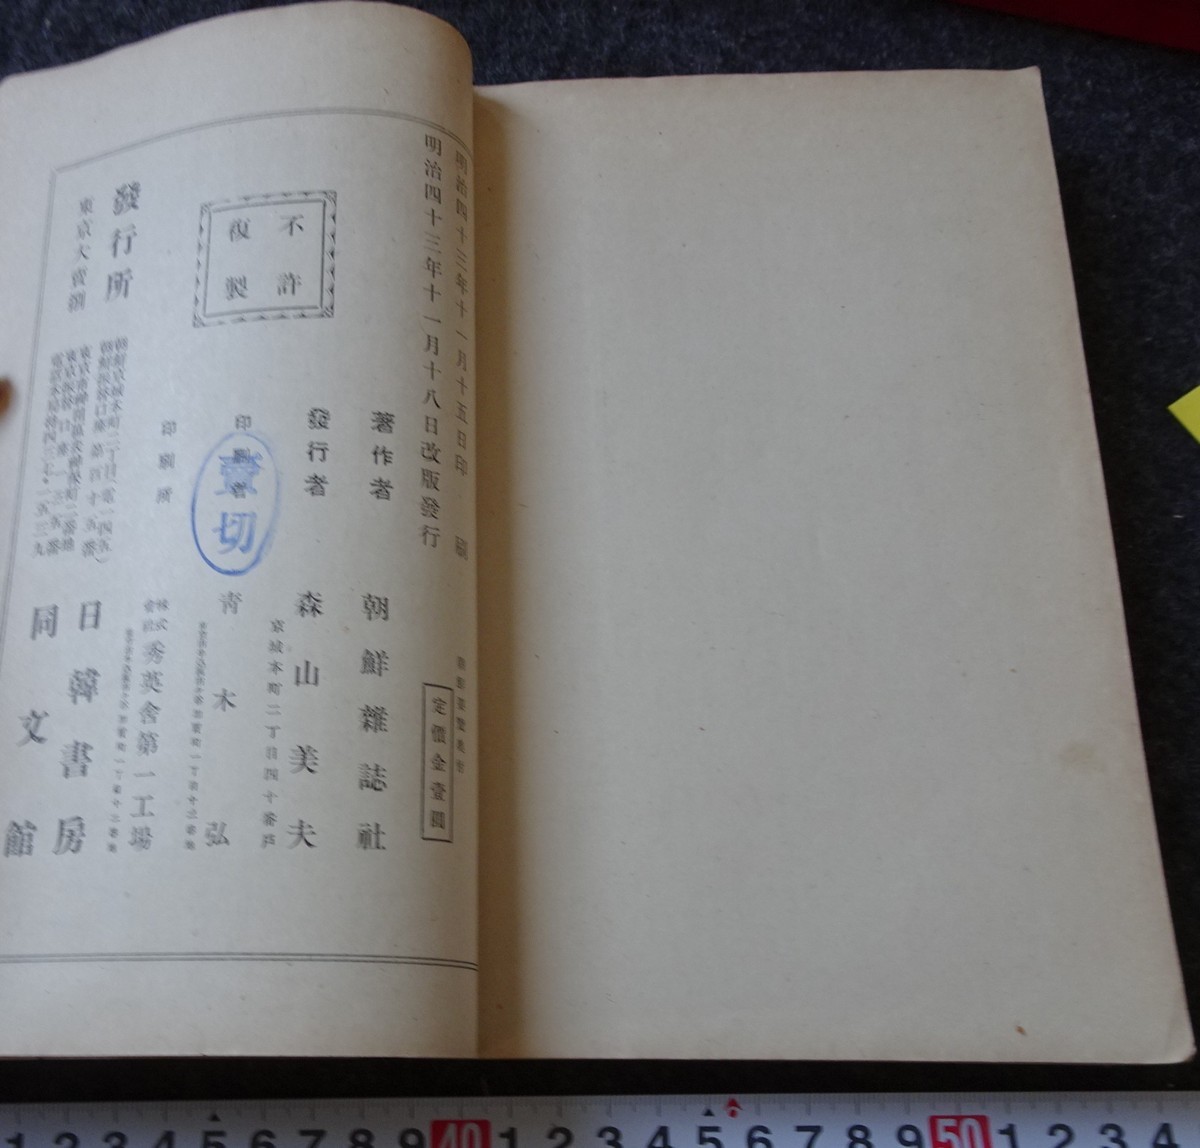 rarebookkyoto s889 朝鮮要覧 雑誌社 日韓書房 1910年 李朝 大韓帝国 